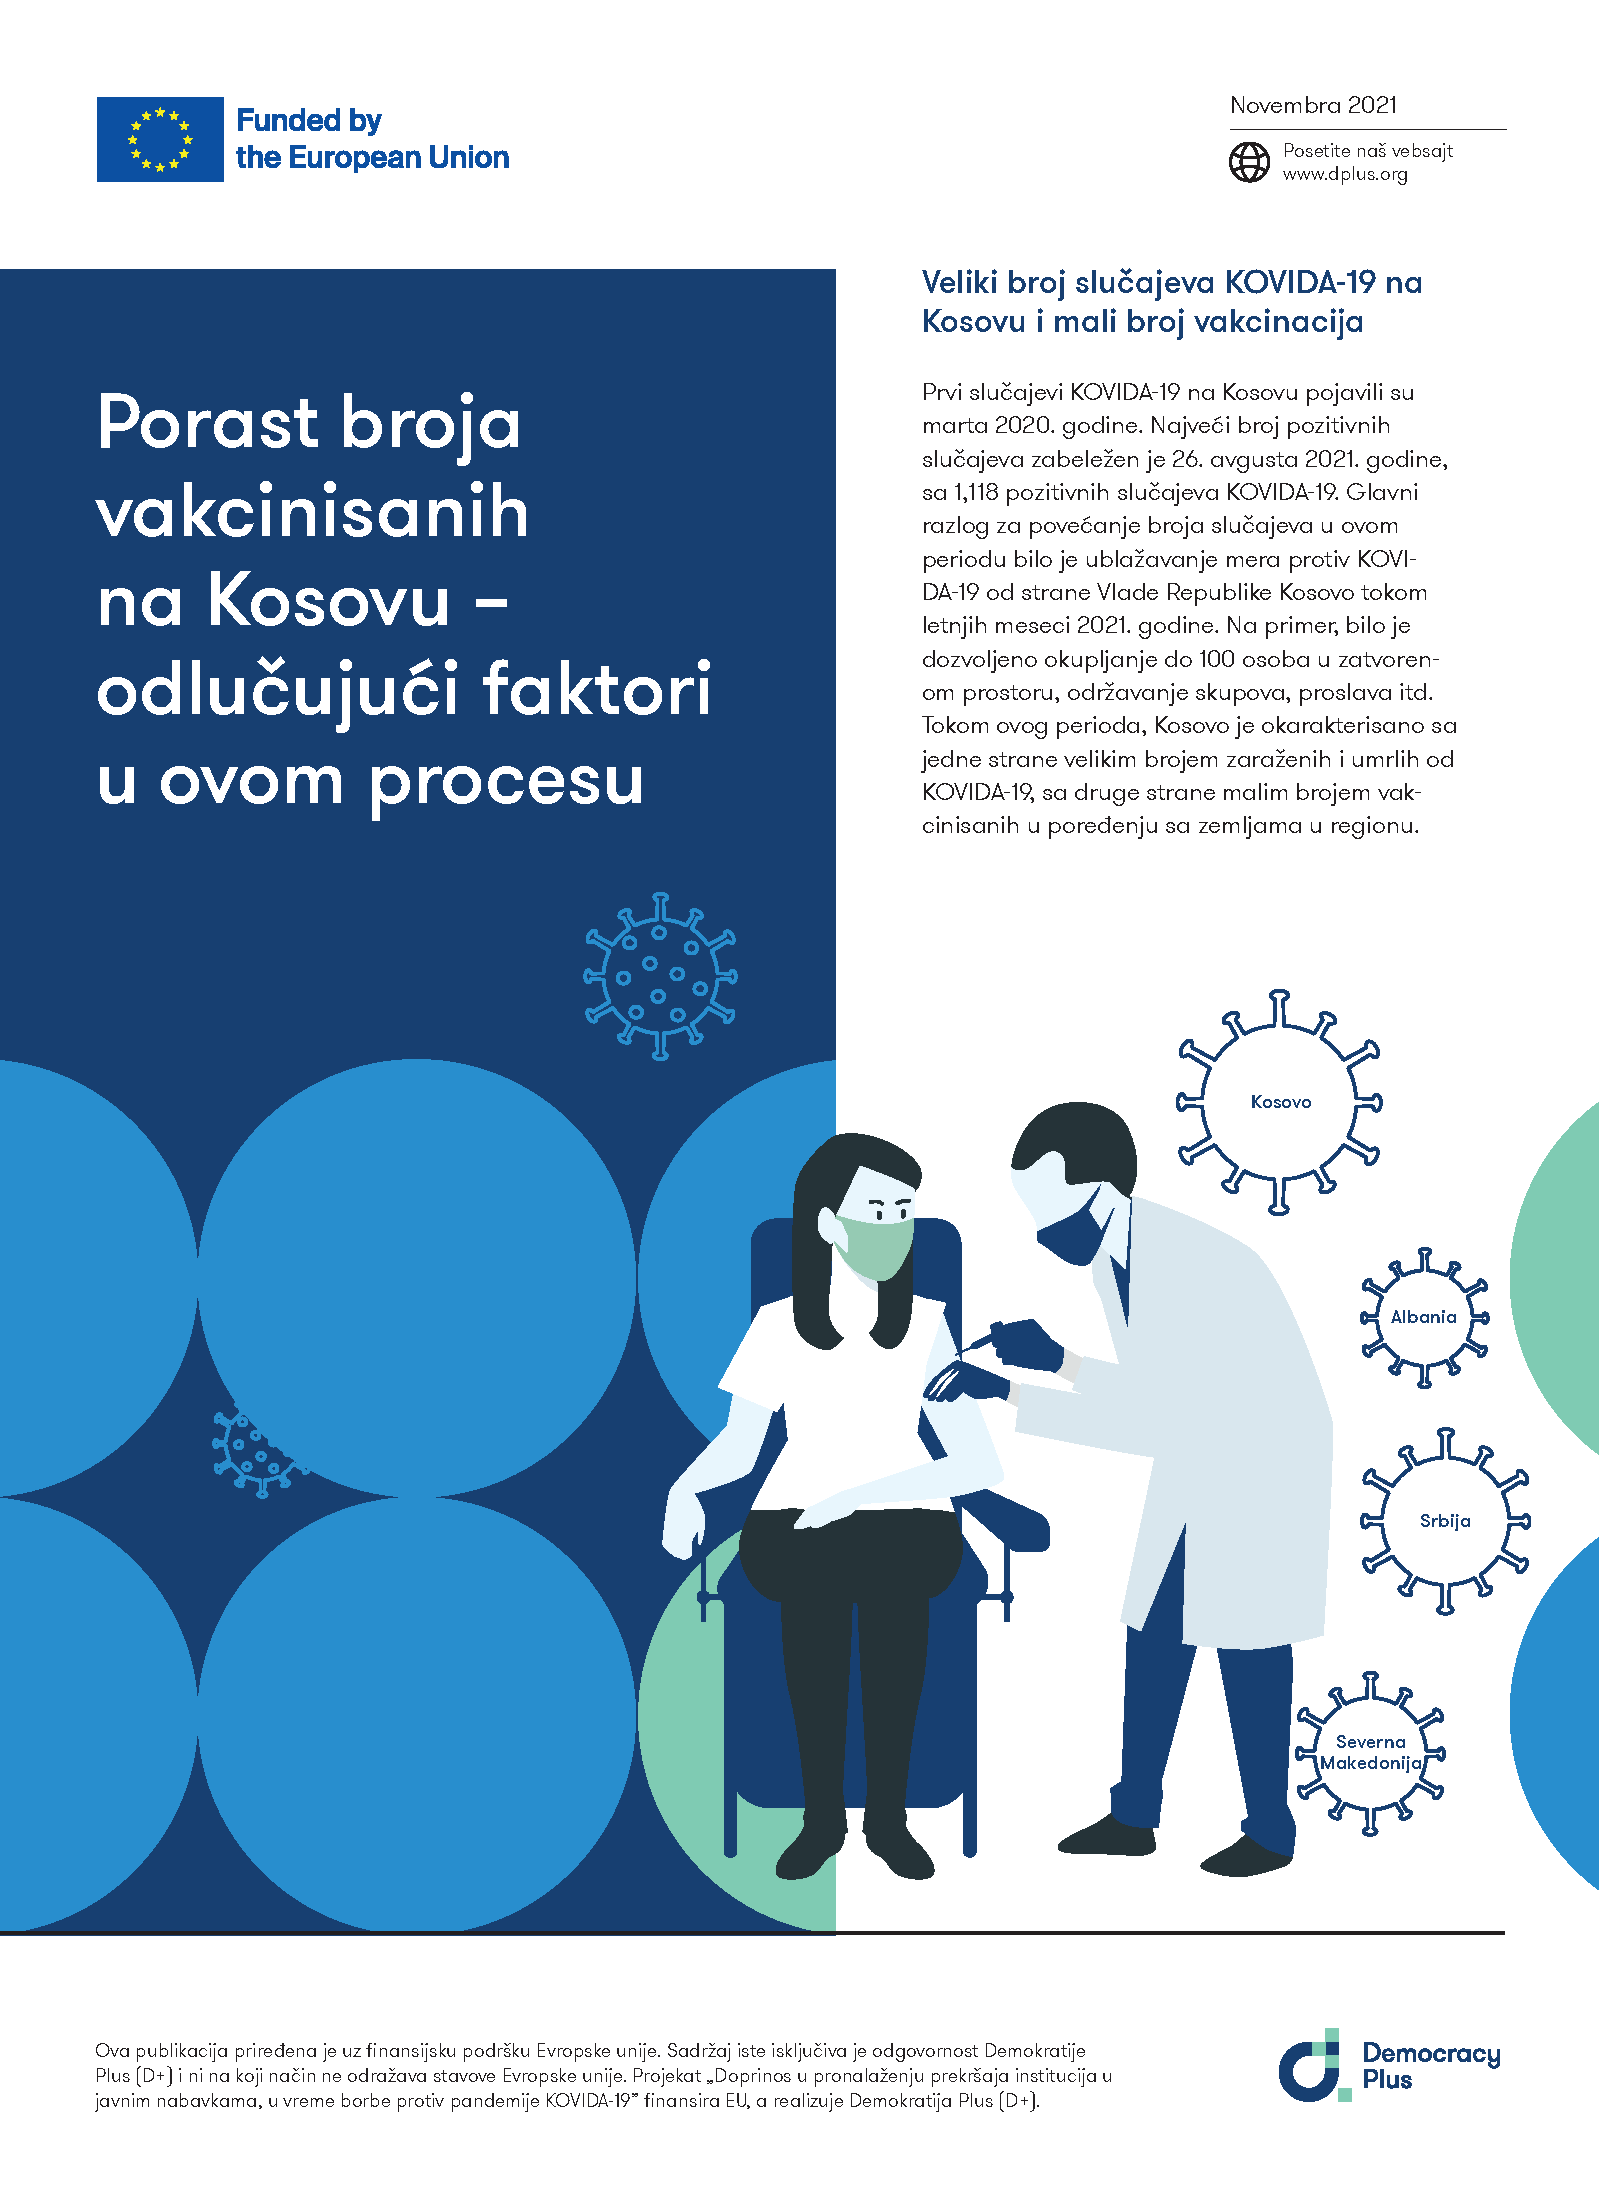 Porast broja vakcinisanih na Kosovu – odlučujući faktori u ovom procesu